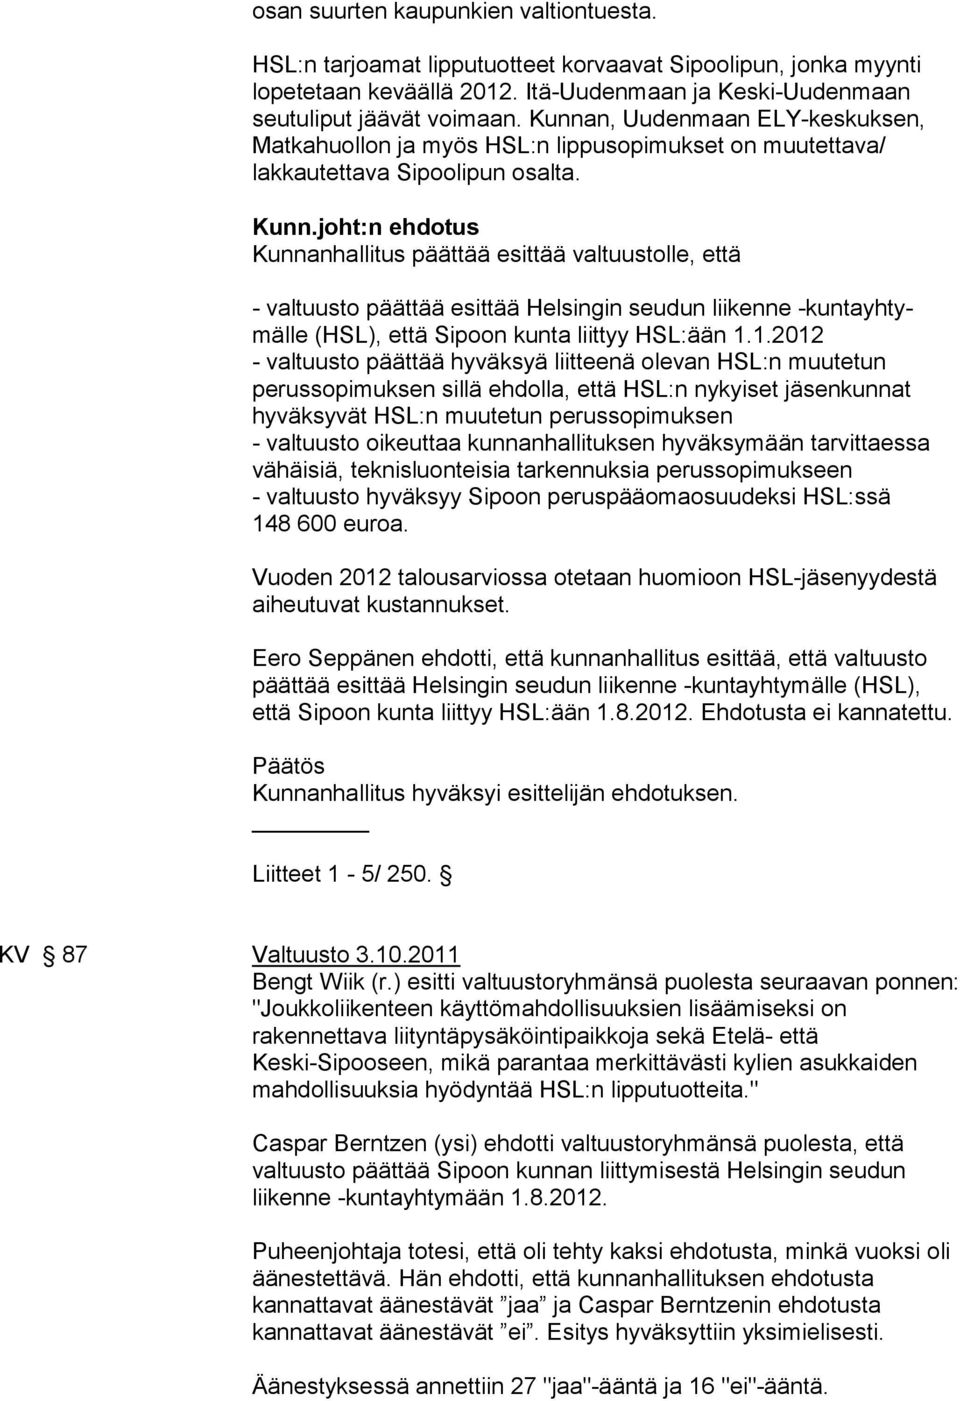 joht:n ehdotus Kunnanhallitus päättää esittää valtuustolle, että - valtuusto päättää esittää Helsingin seudun liikenne -kuntayhtymälle (HSL), että Sipoon kunta liittyy HSL:ään 1.